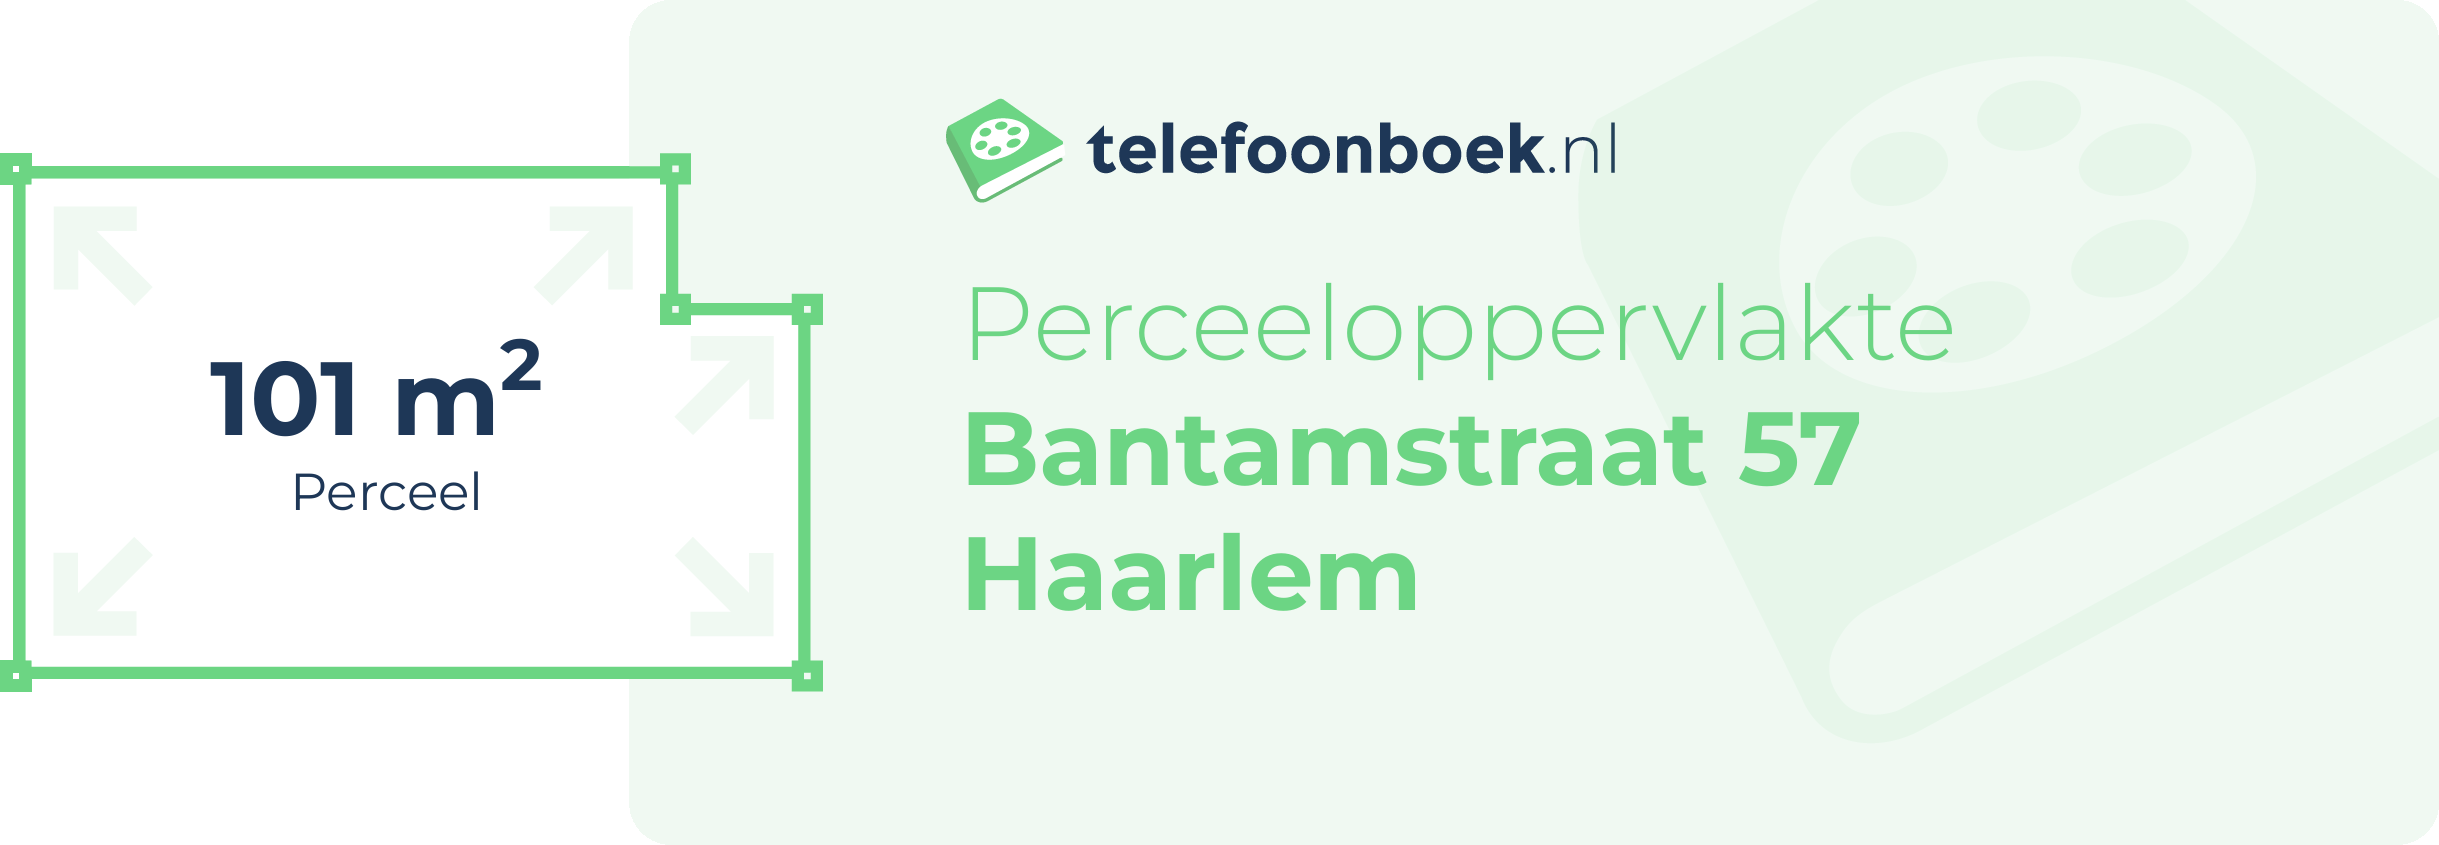 Perceeloppervlakte Bantamstraat 57 Haarlem